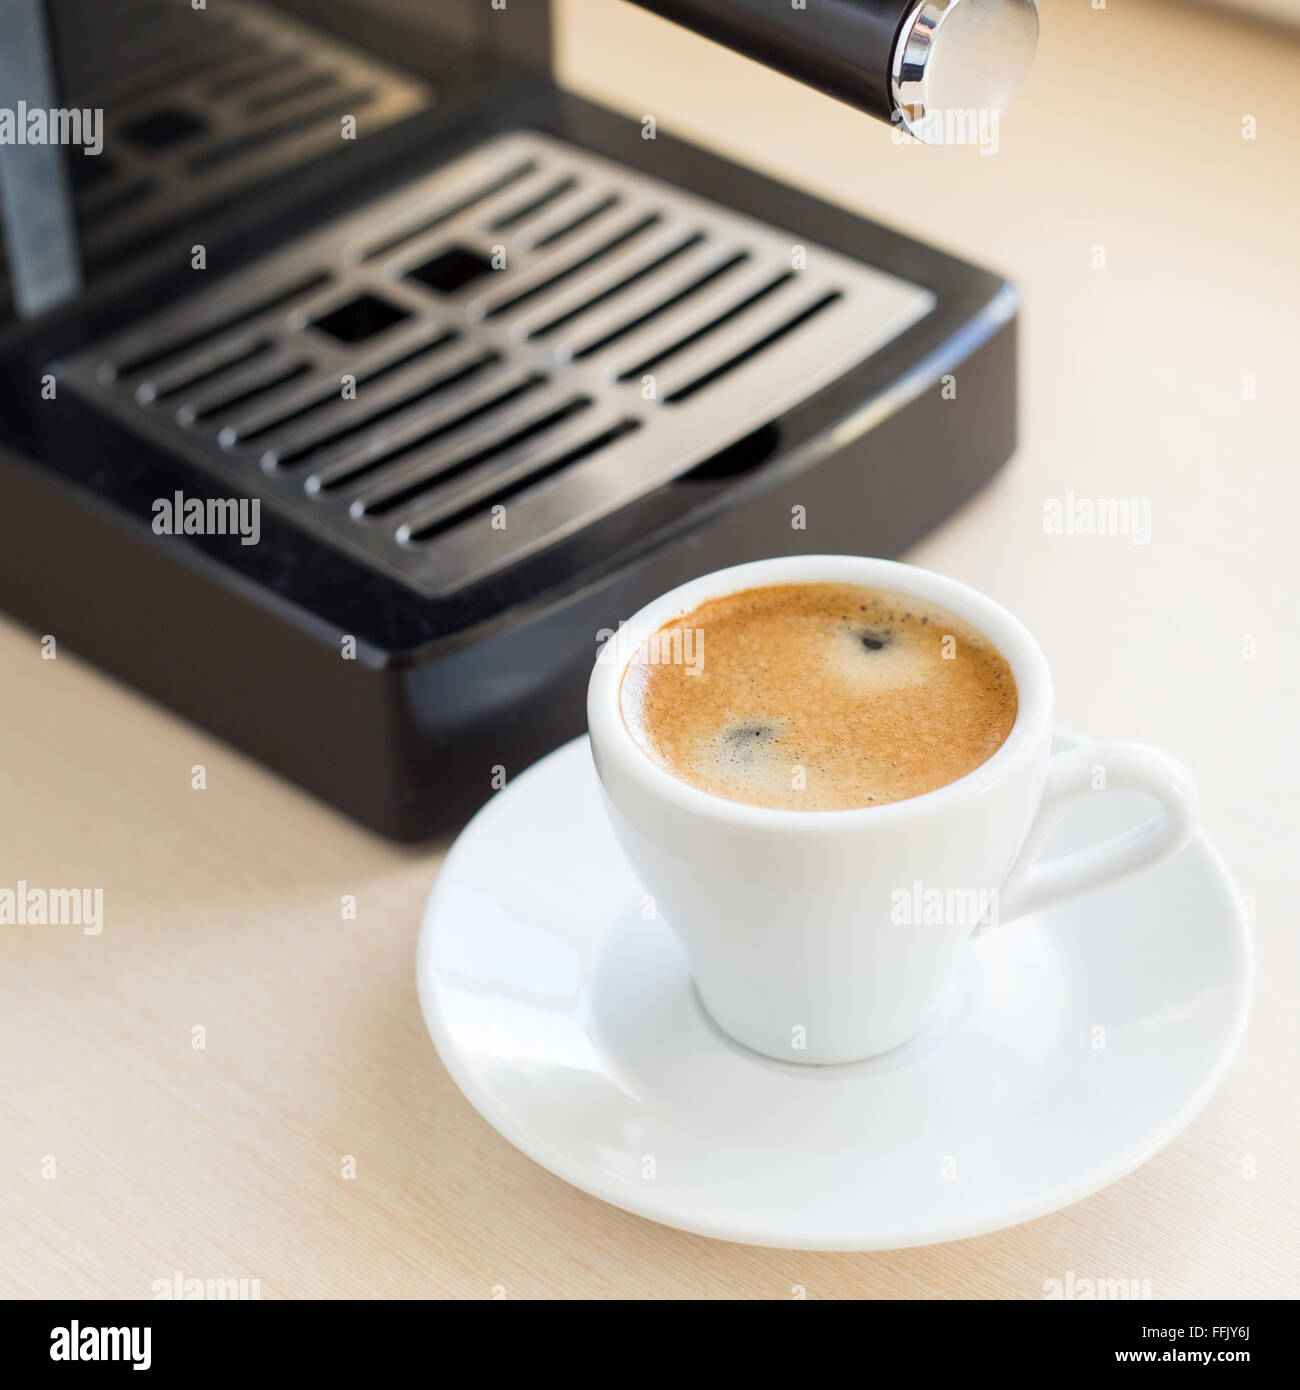 Brewing classic avec une machine à café espresso. Café avec mousse brune en petite tasse blanche sur la table de la cuisine près de window Banque D'Images